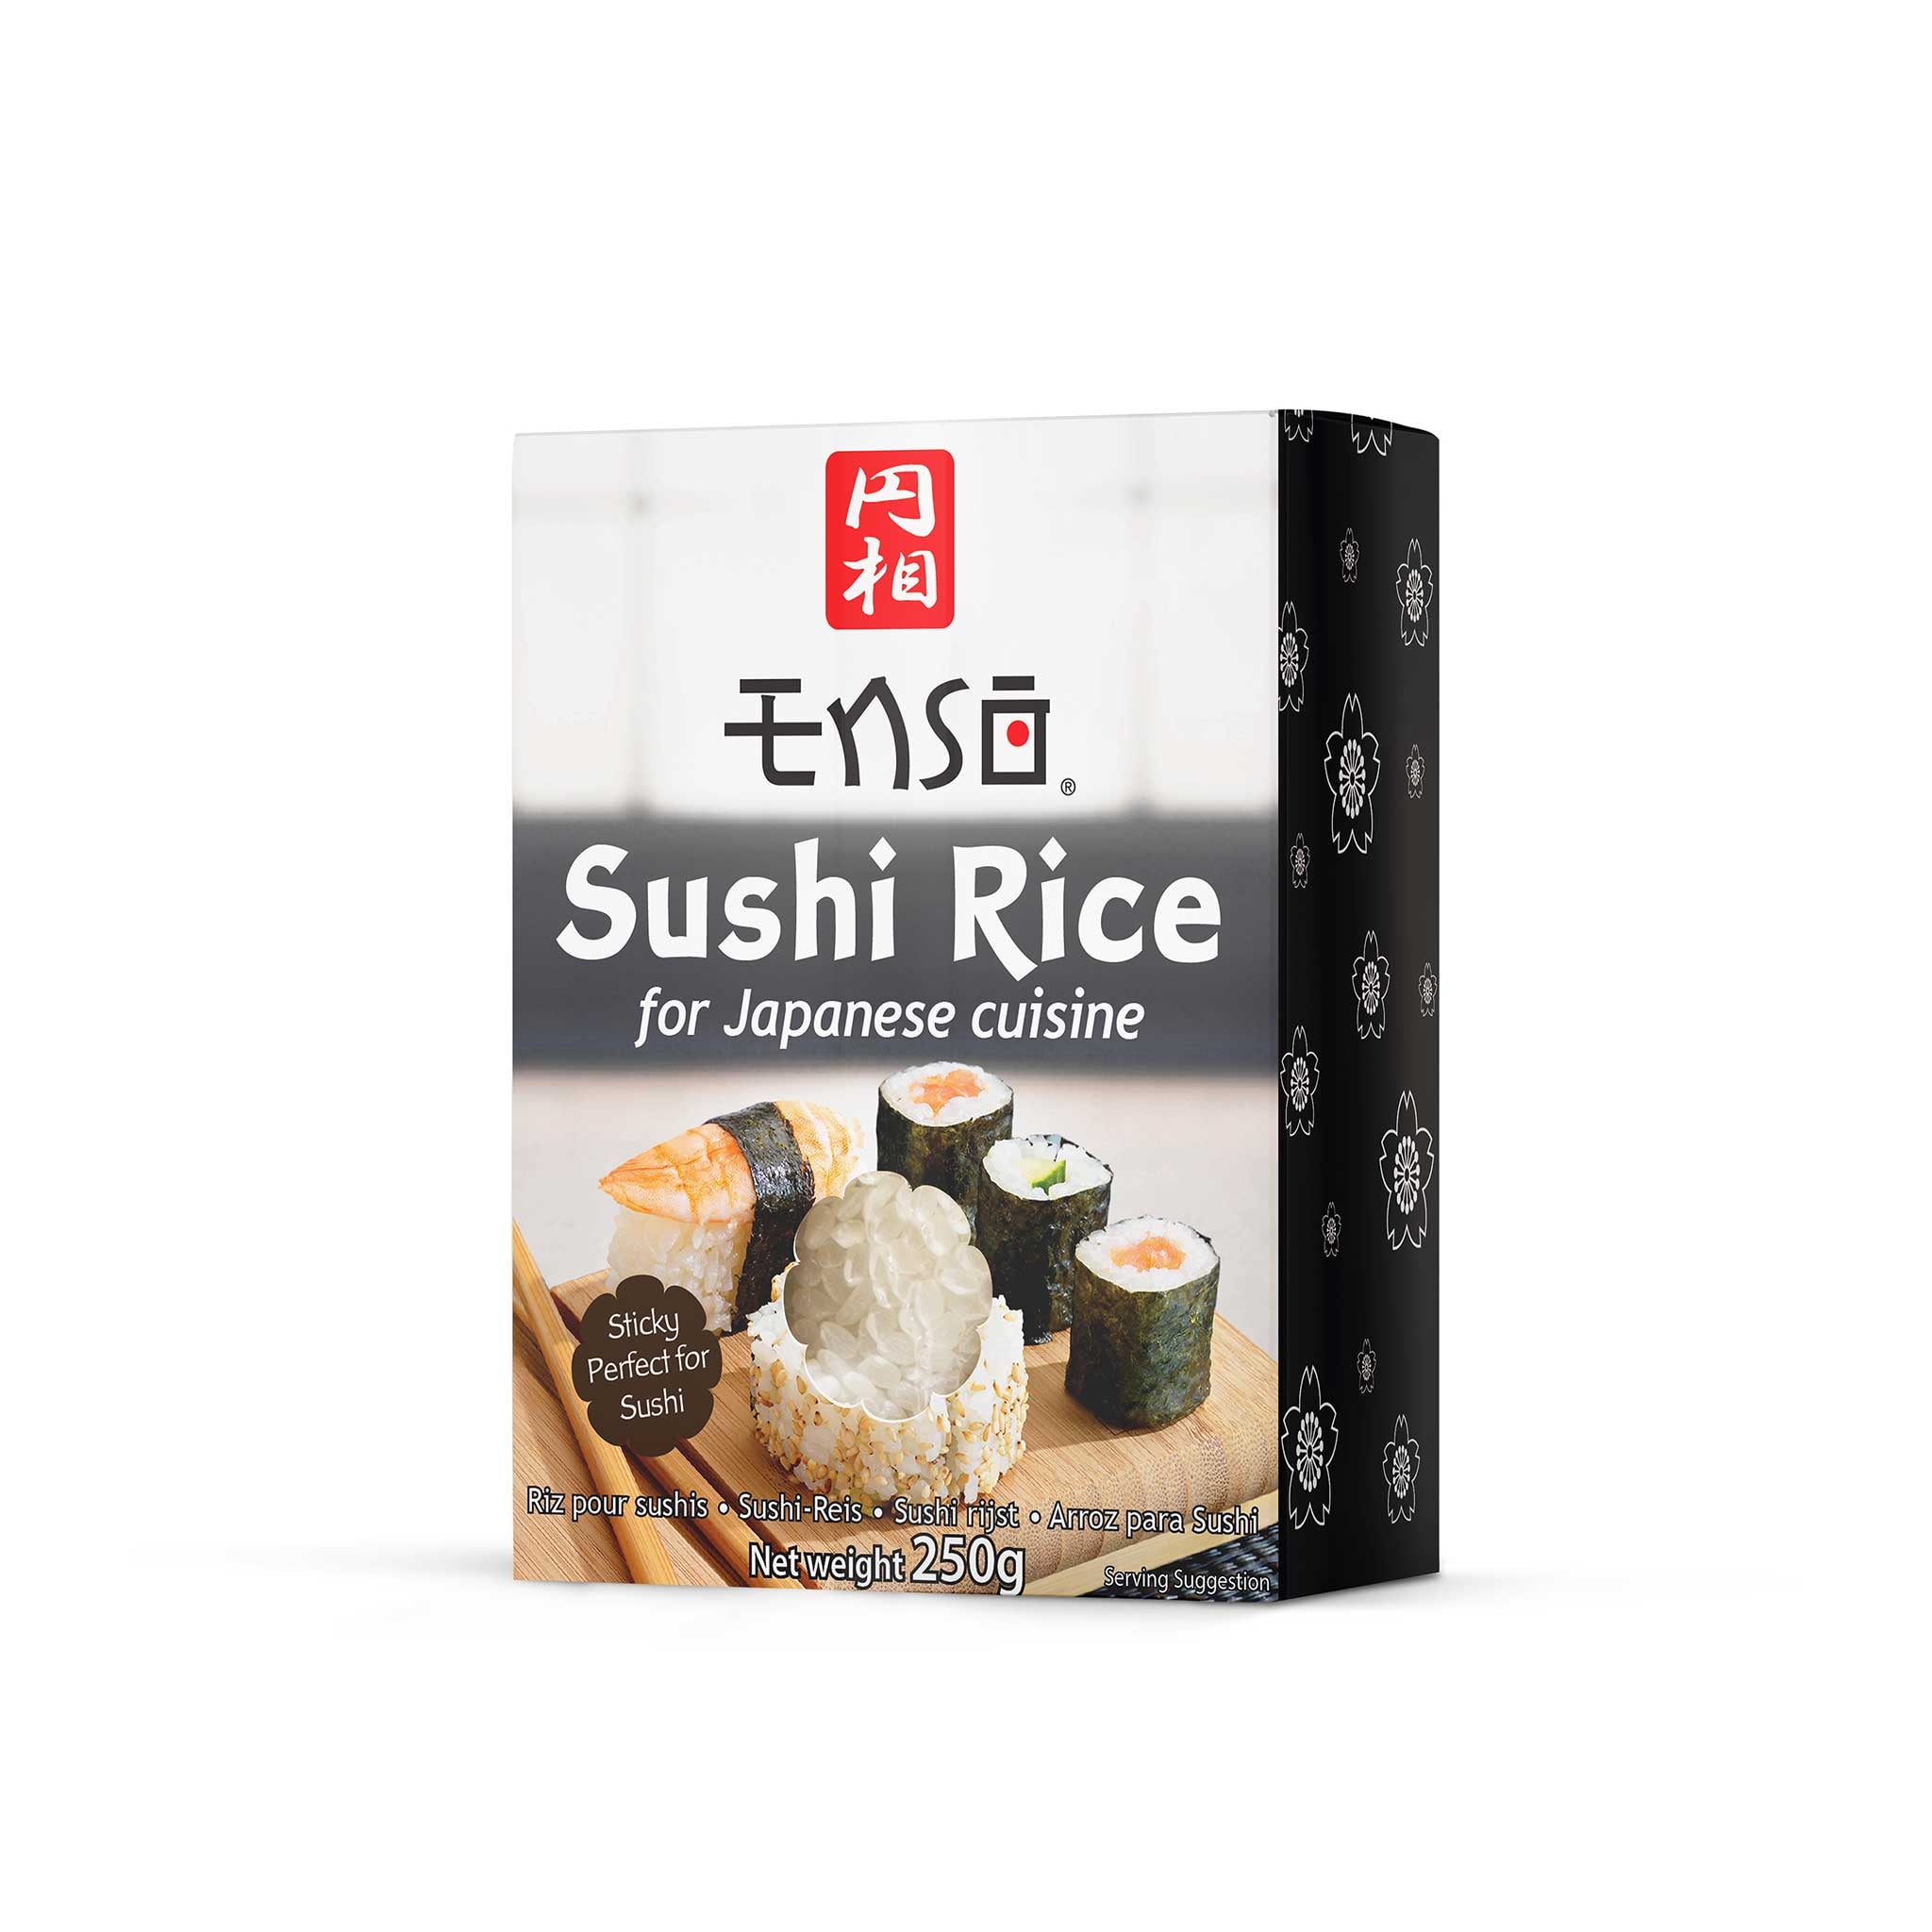 Sushi Rice – deSIAMCuisine (Thailand) Co Ltd